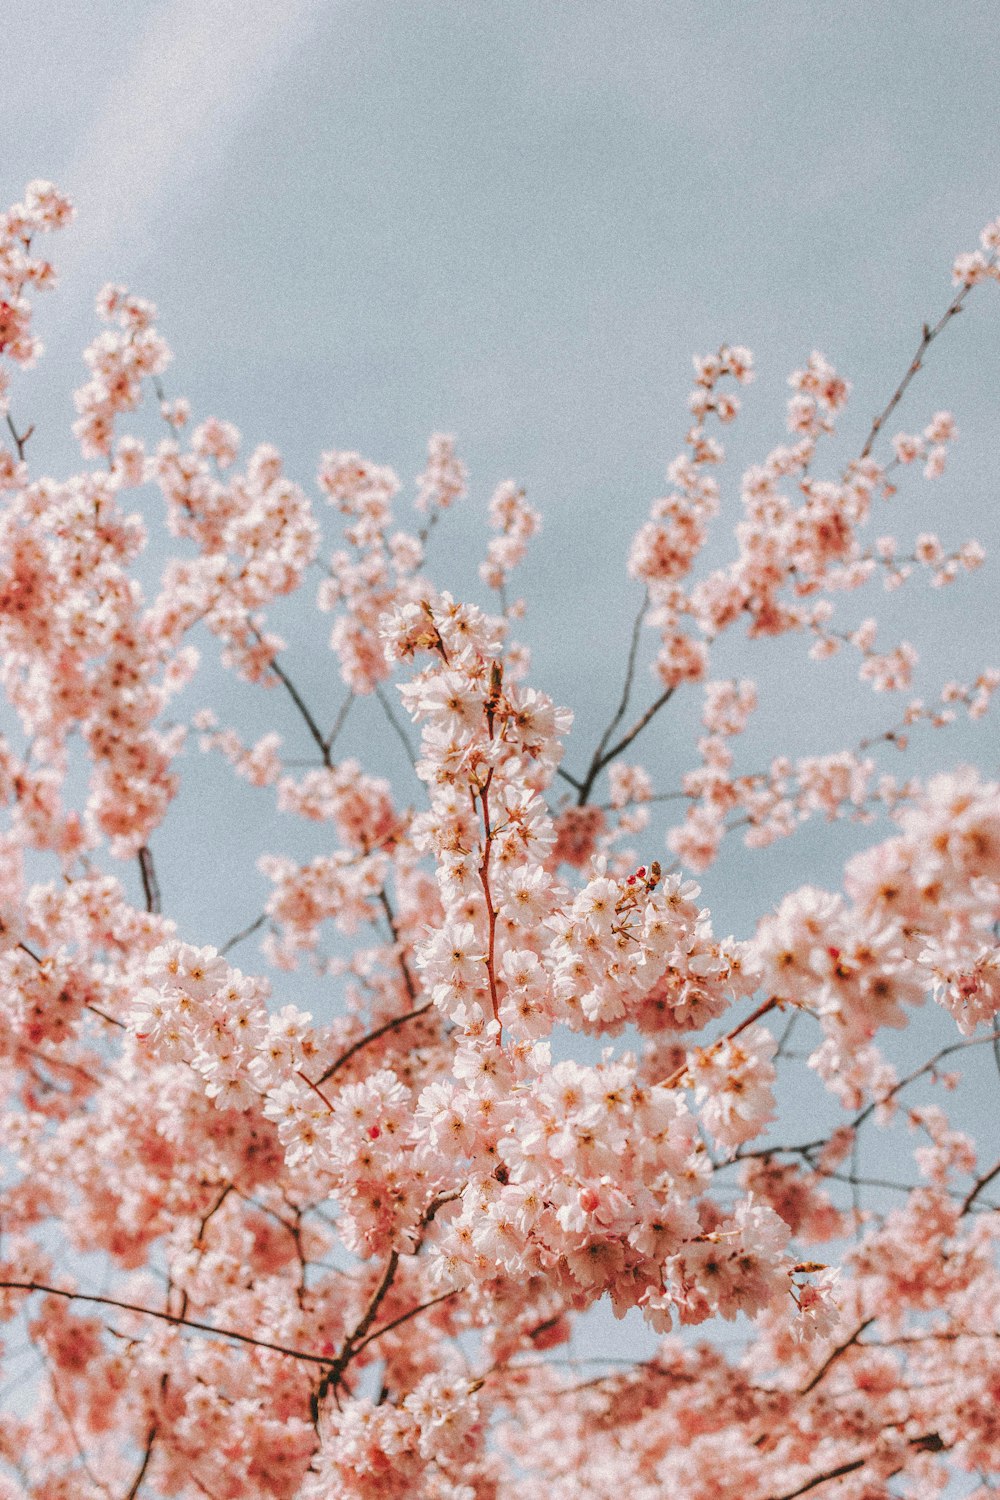 Rosa Kirschblütenbaum unter blauem Himmel tagsüber